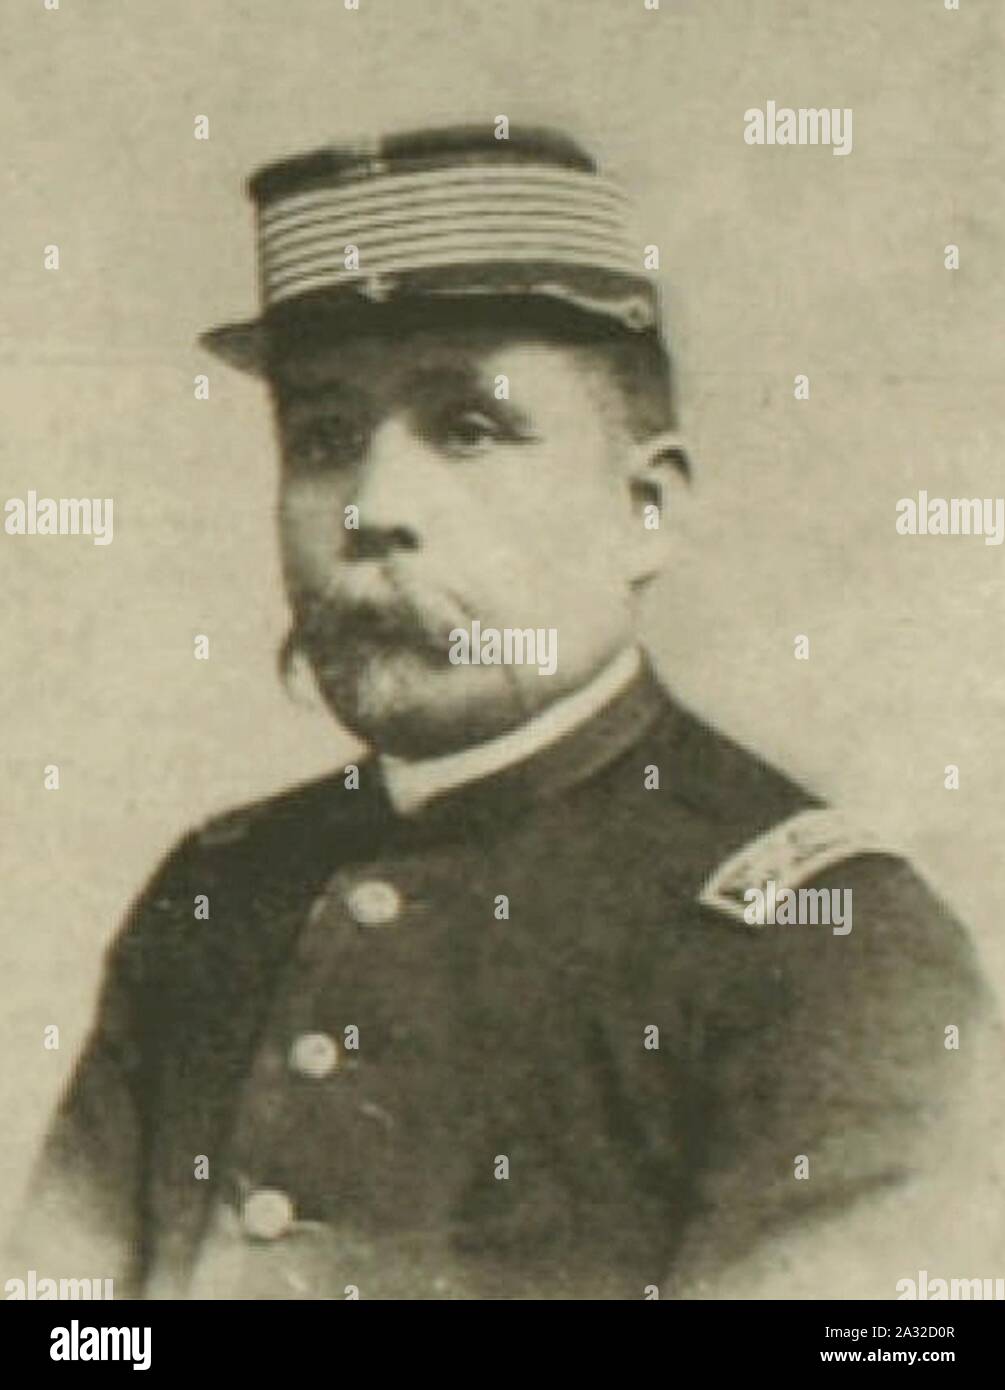 Estanislao del Canto - Coronel en 1891 (cropped). Stock Photo